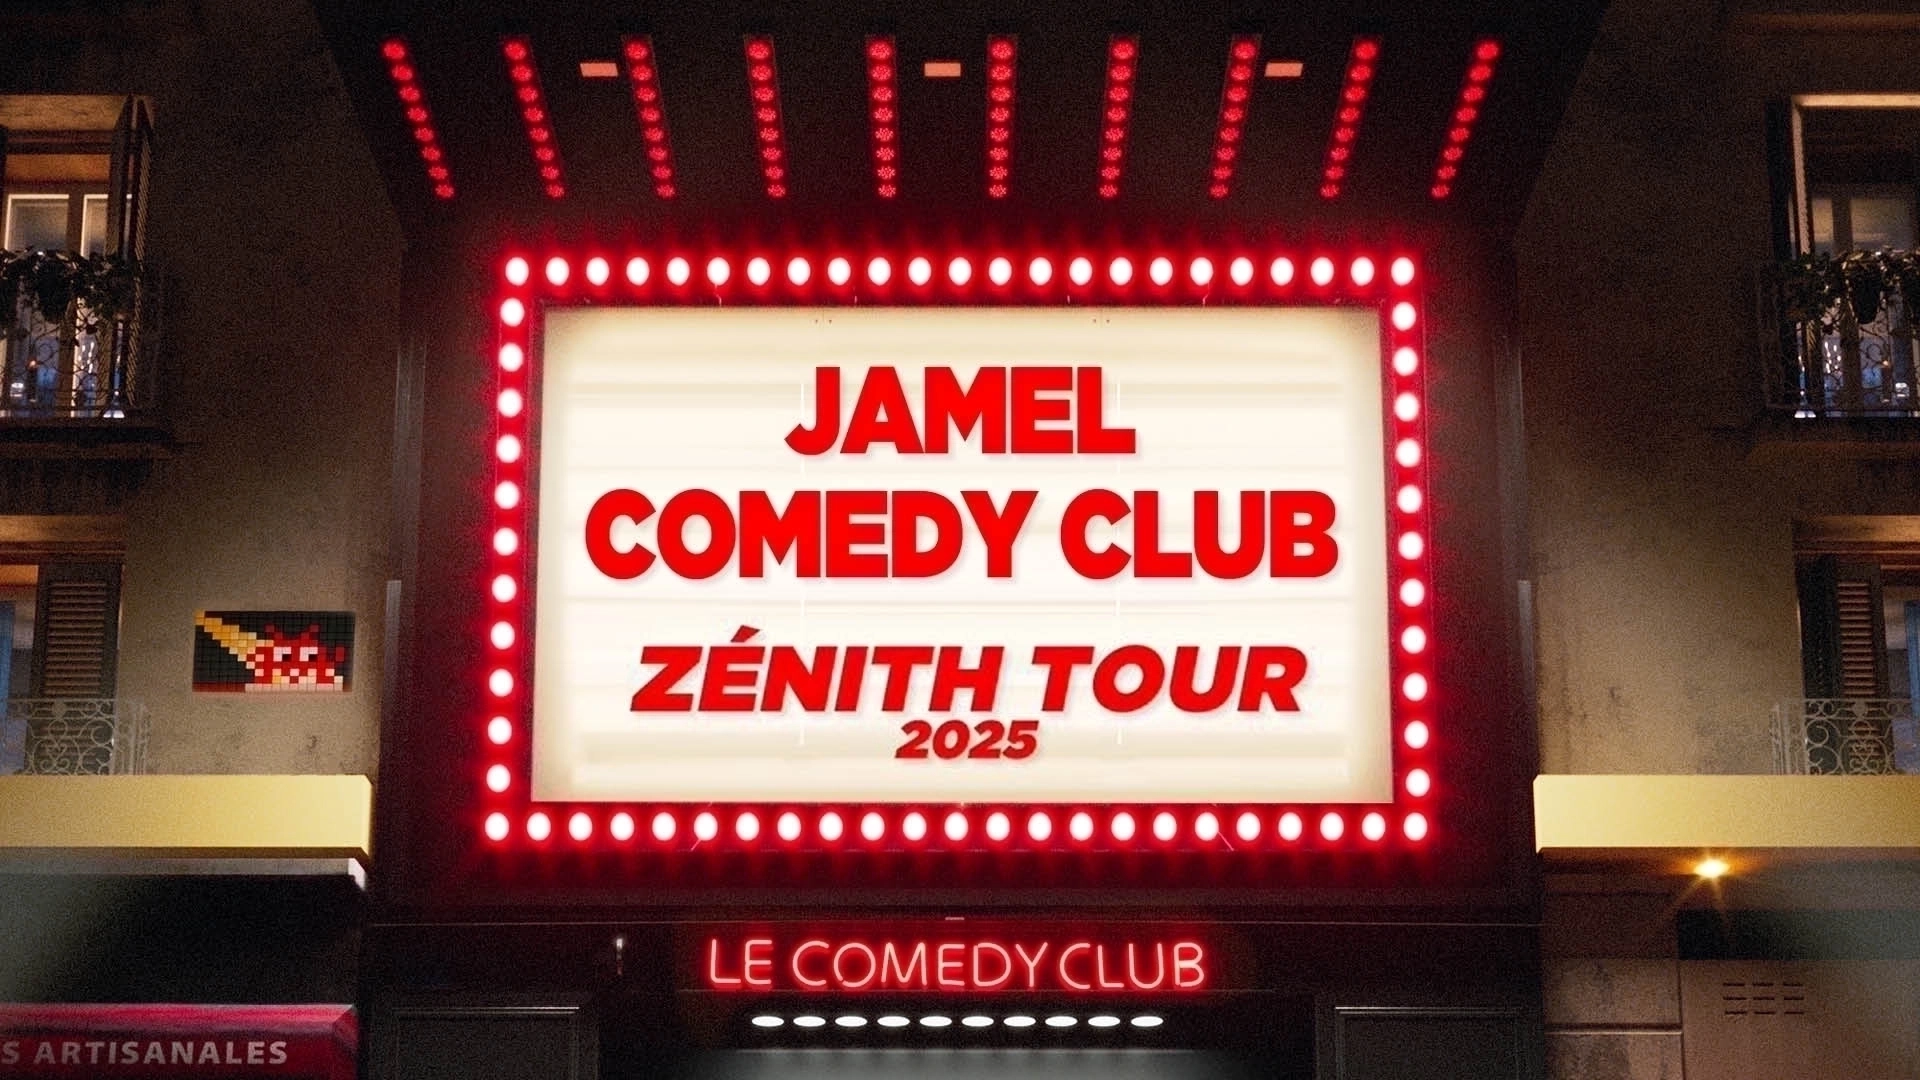 Jamel Comedy Club Zenith Tour 2025 en L'amphitheatre Tickets